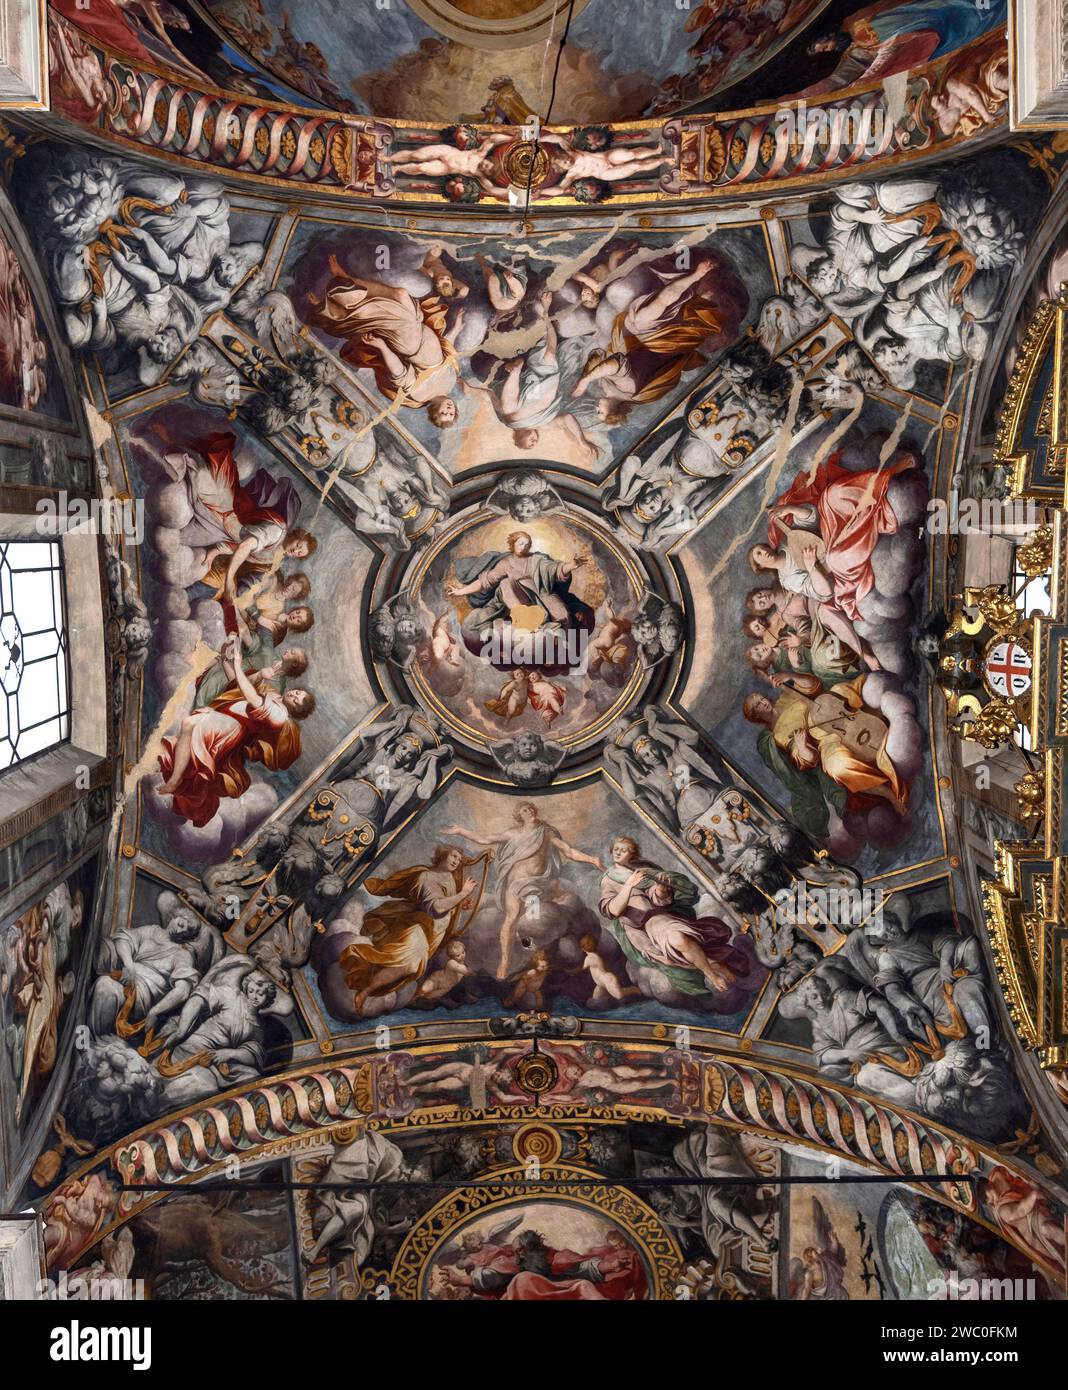 Salvatore in gloria - affreschi della cupola  - Camillo Procaccini - 1598 - Reggio Emilia, chiesa di S.Prospero Stock Photo